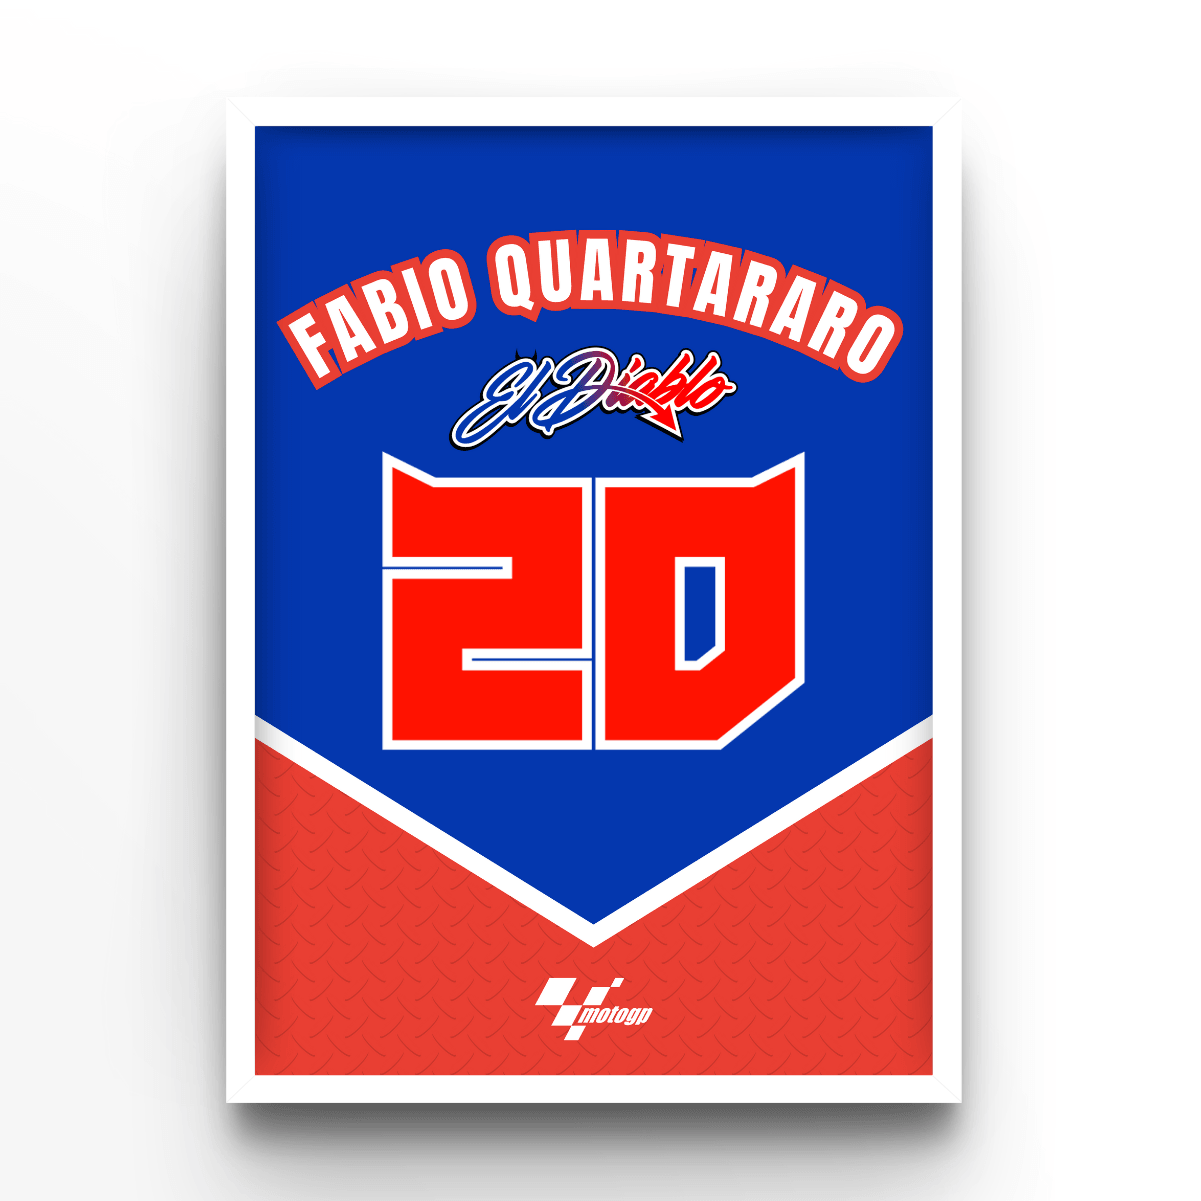 Fabio Quartararo - A4, A3, A2 Posters Base - Poster Print Shop / Art Prints / PostersBase